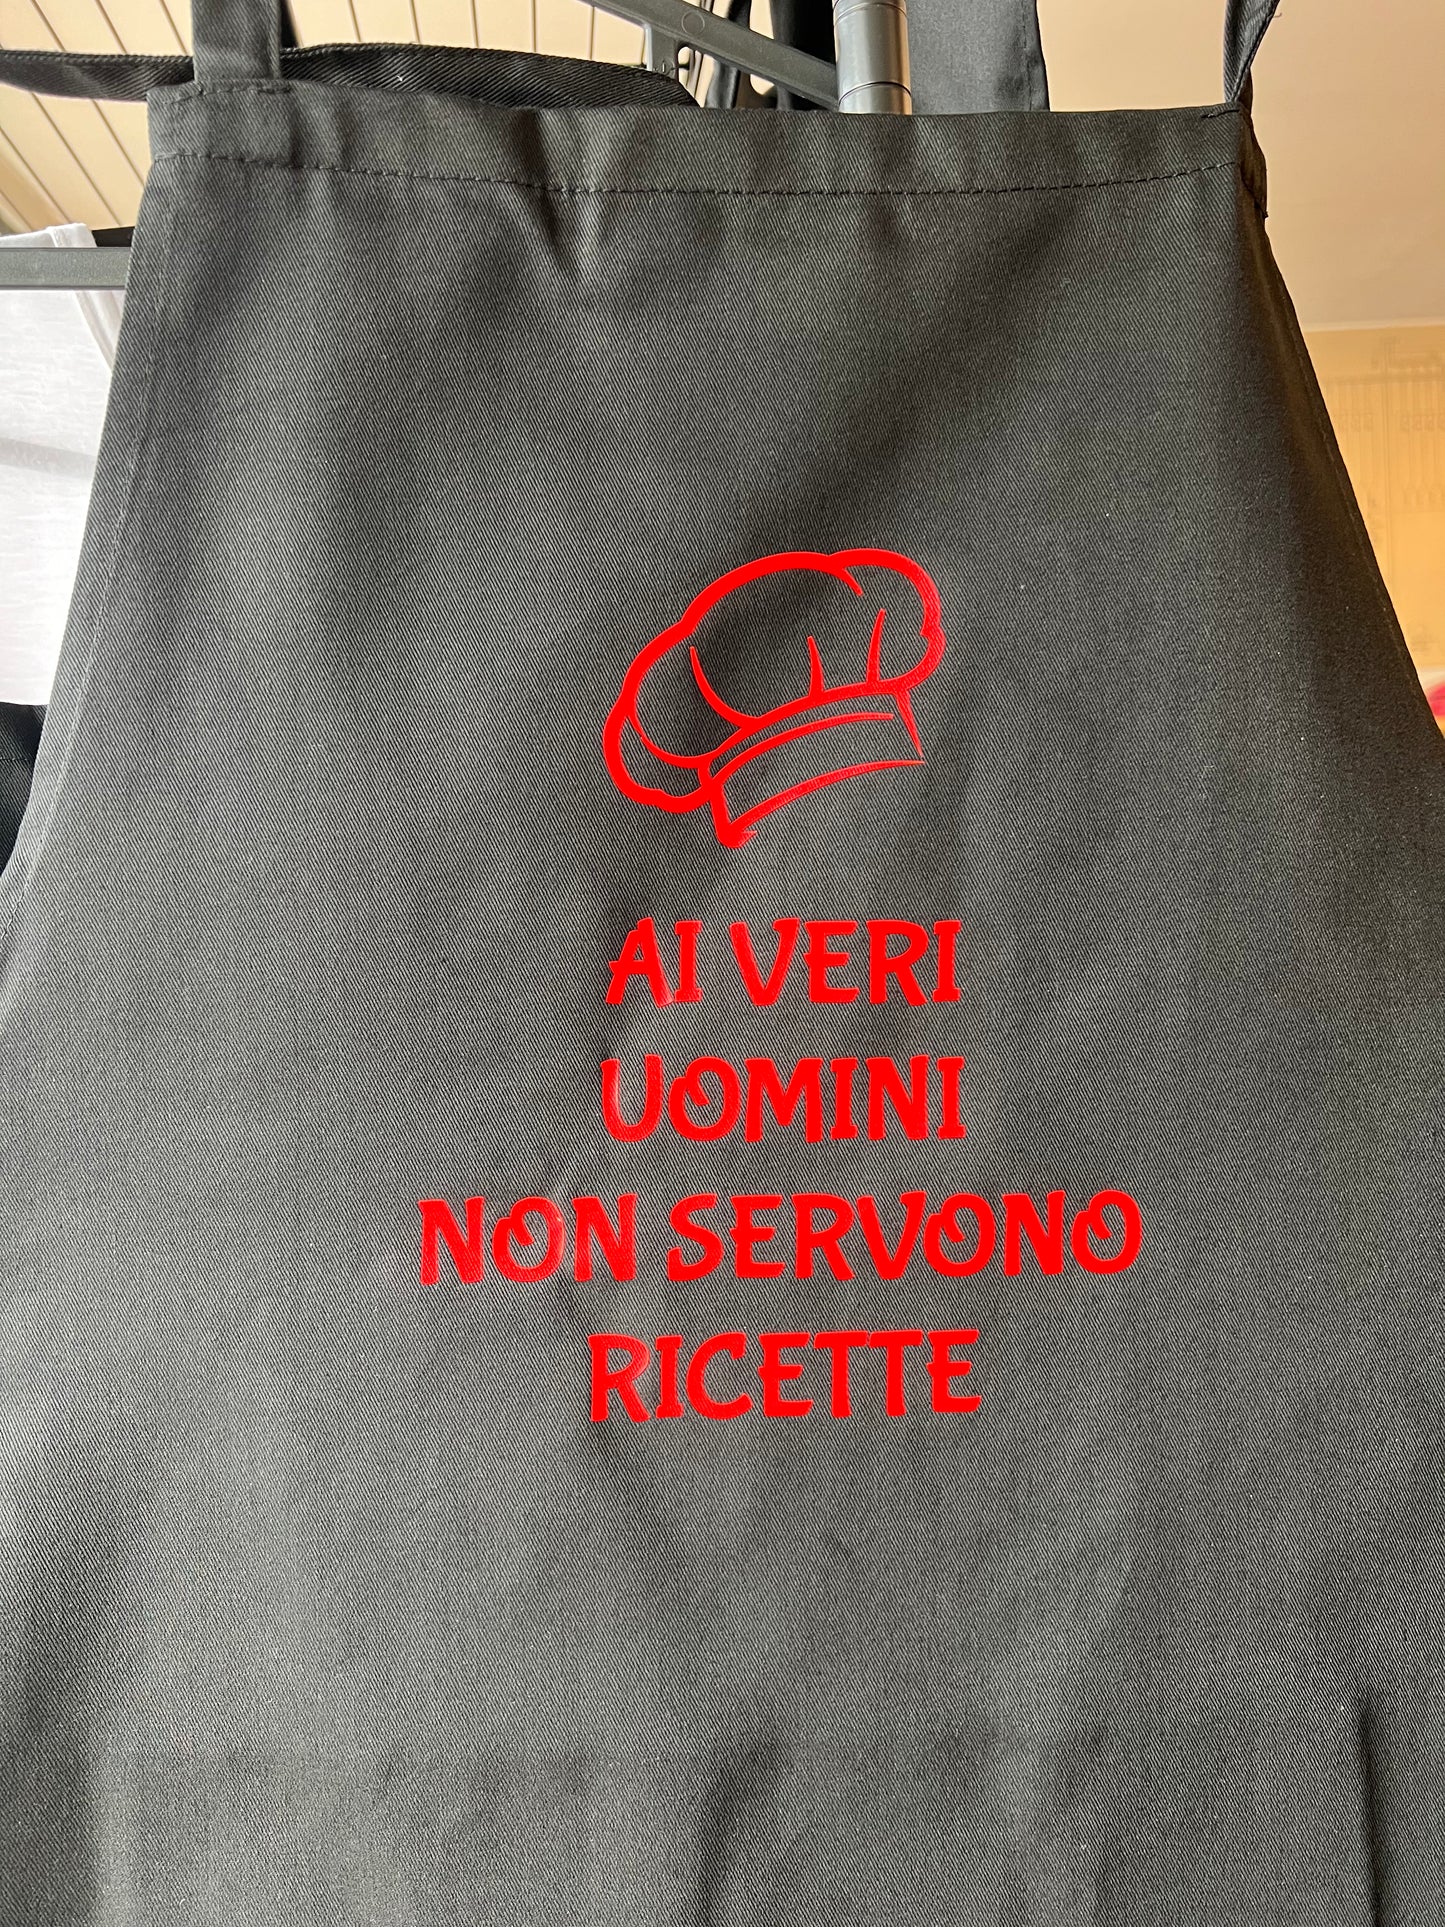 Grembiule nero da cucina-- "AI VERI UOMINI NON SERVONO RICETTE"- stampa rossa